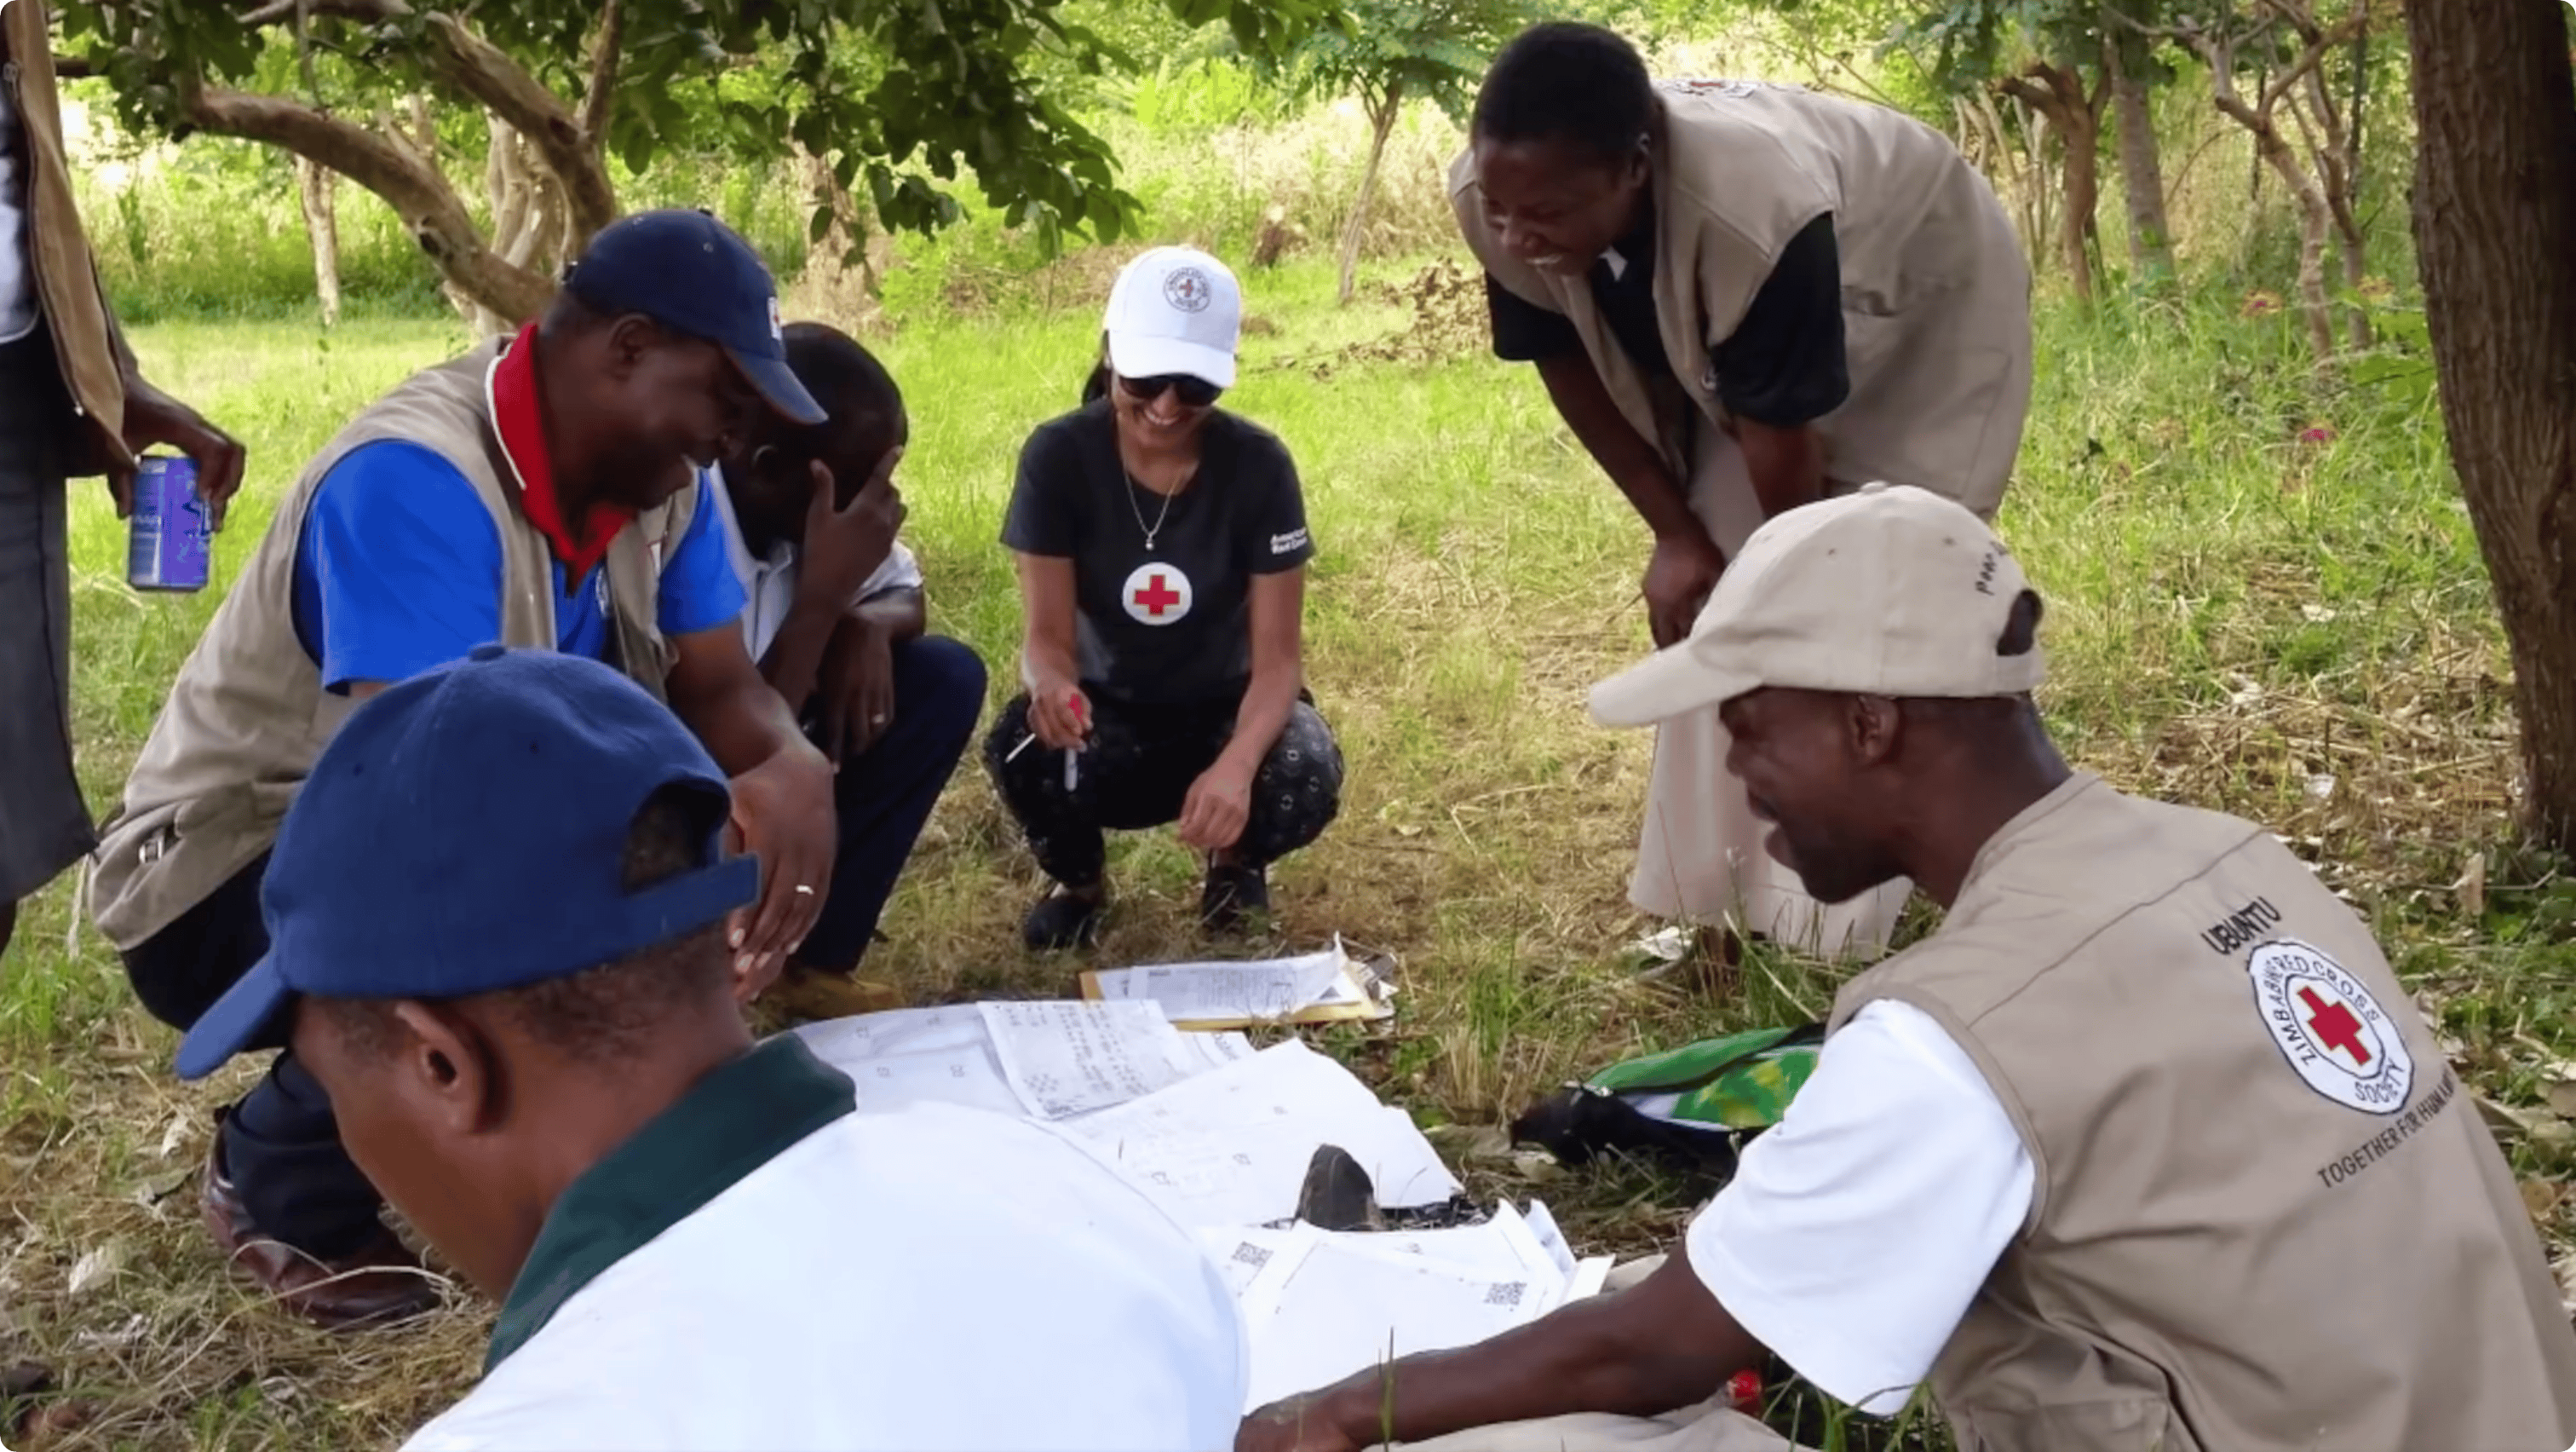 Працівники гуманітарної місії Червоного Хреста розклали на землі папери з дослідженням місцевості та обговорюють їх